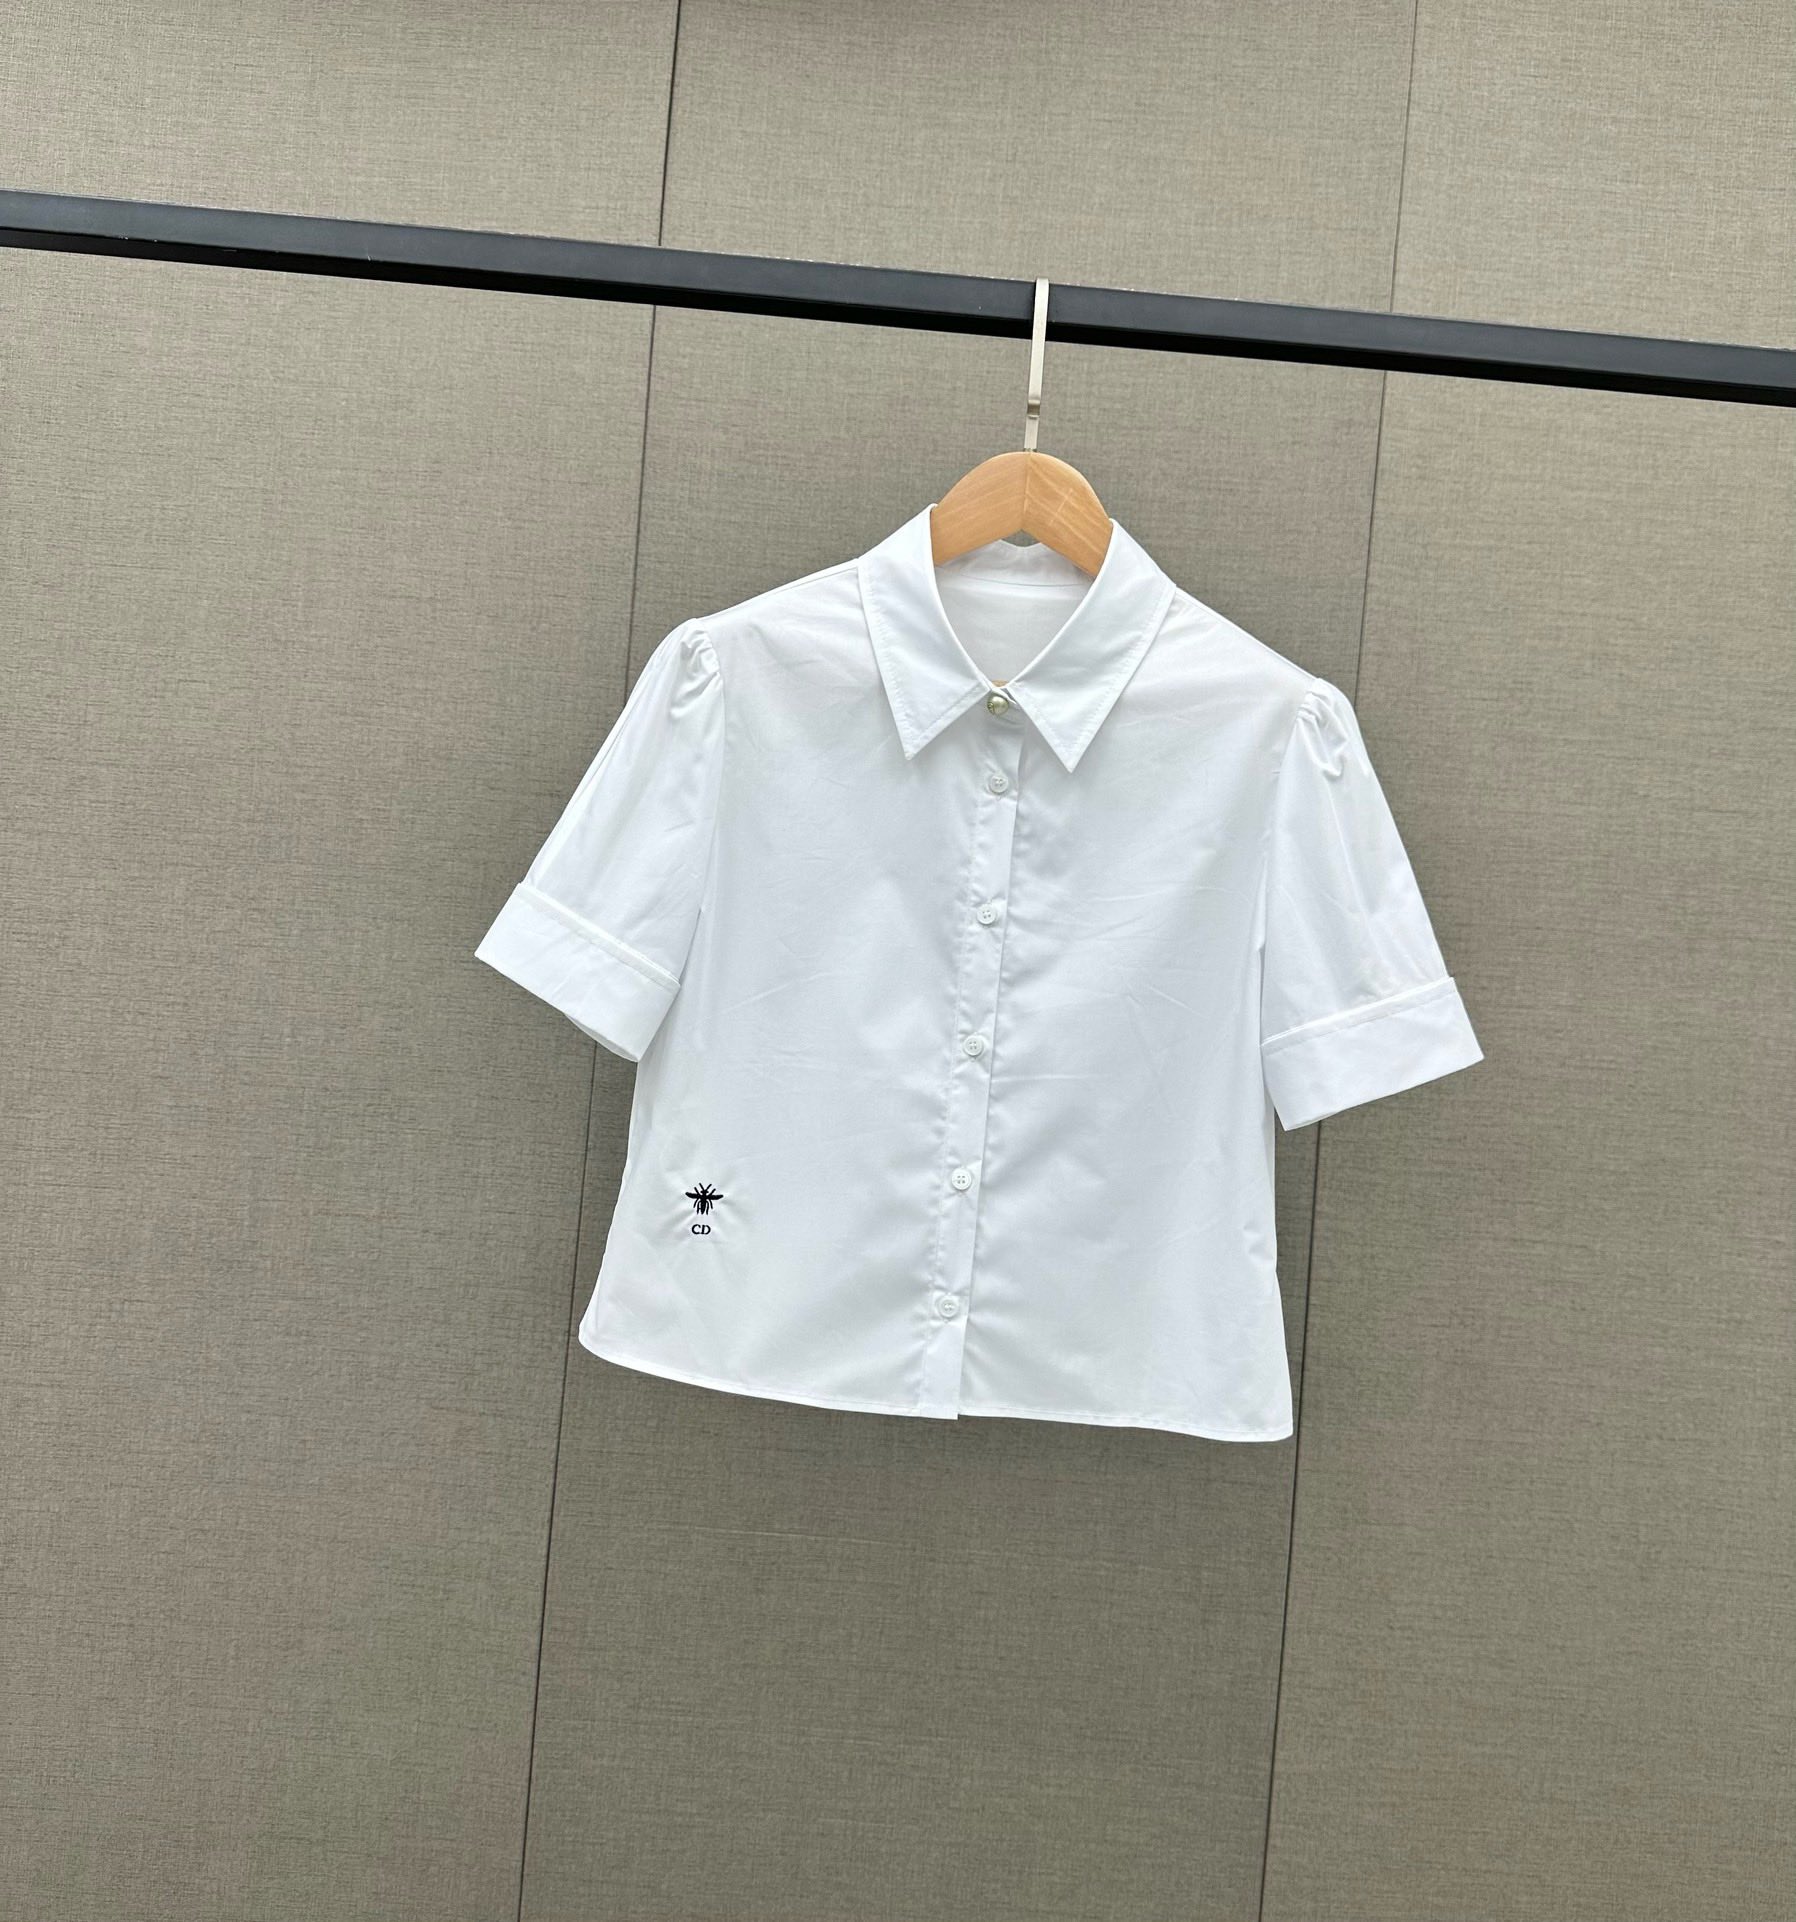 Dio-r小蜜蜂刺绣衬衣+logo半裙小蜜蜂刺绣衬衣白色衬衫即是单穿的时尚美衣亦是作为各种外套的好帮手往